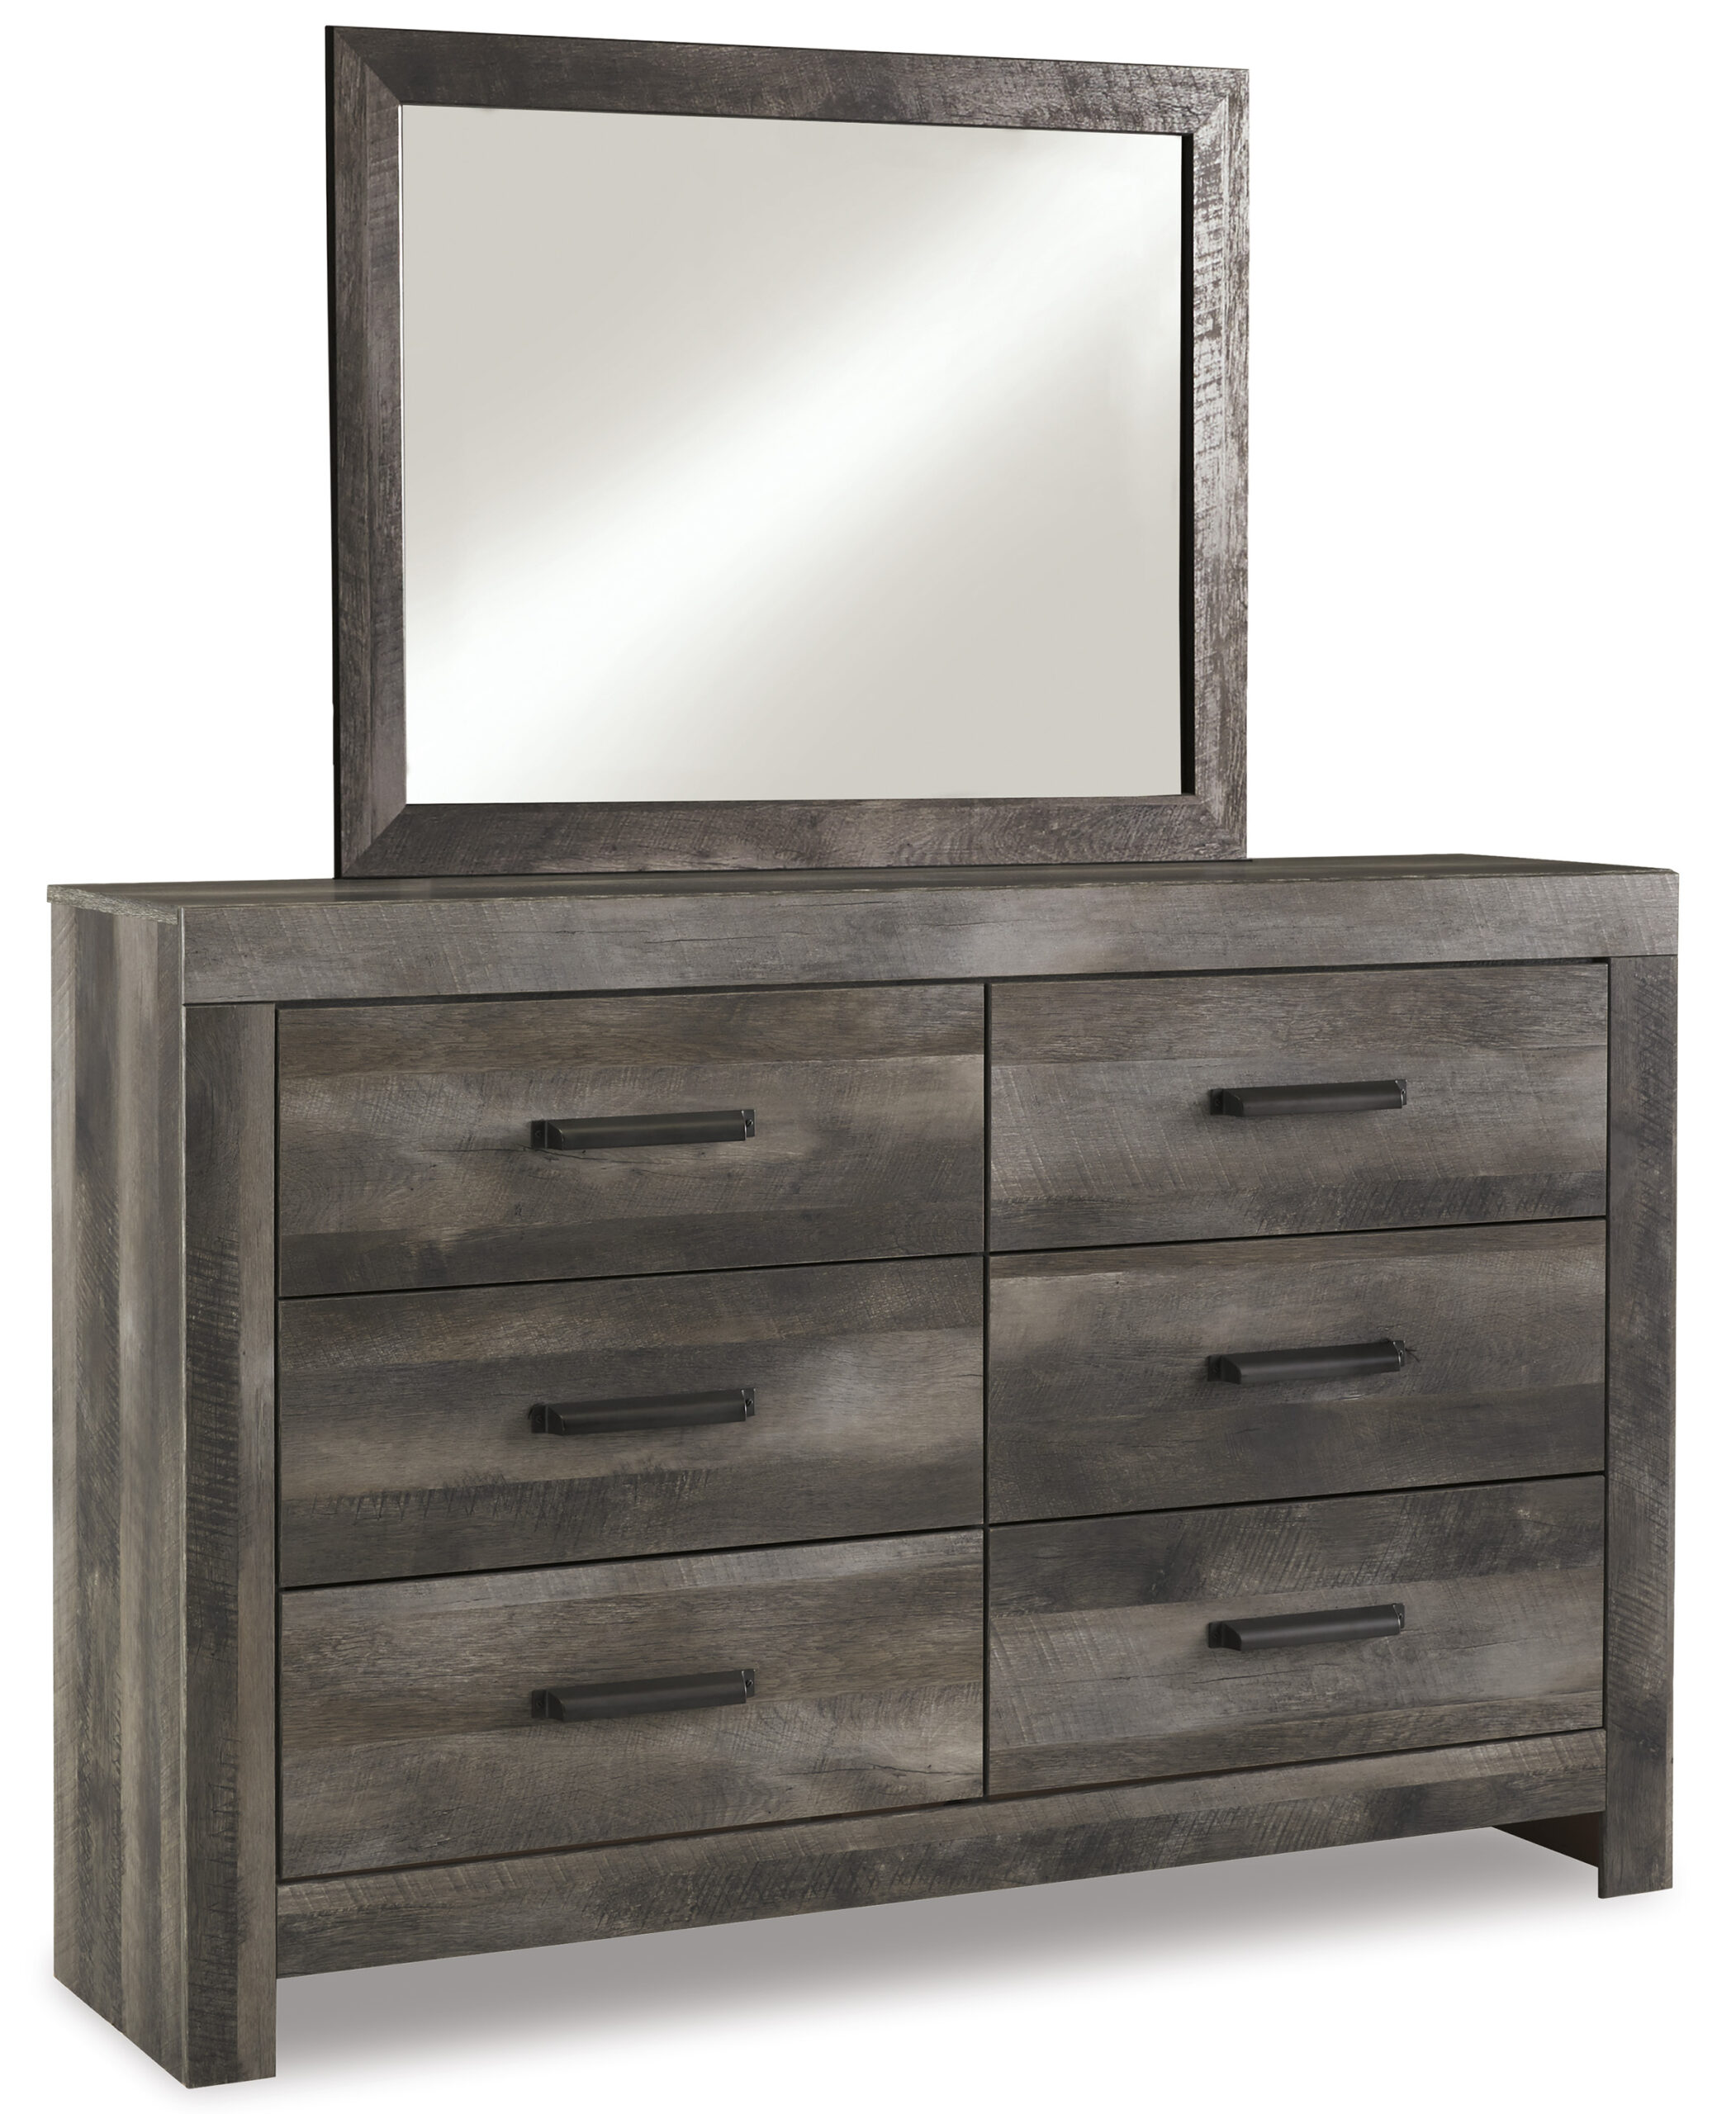 B440-31/36 Wynnlow Dresser Mirror